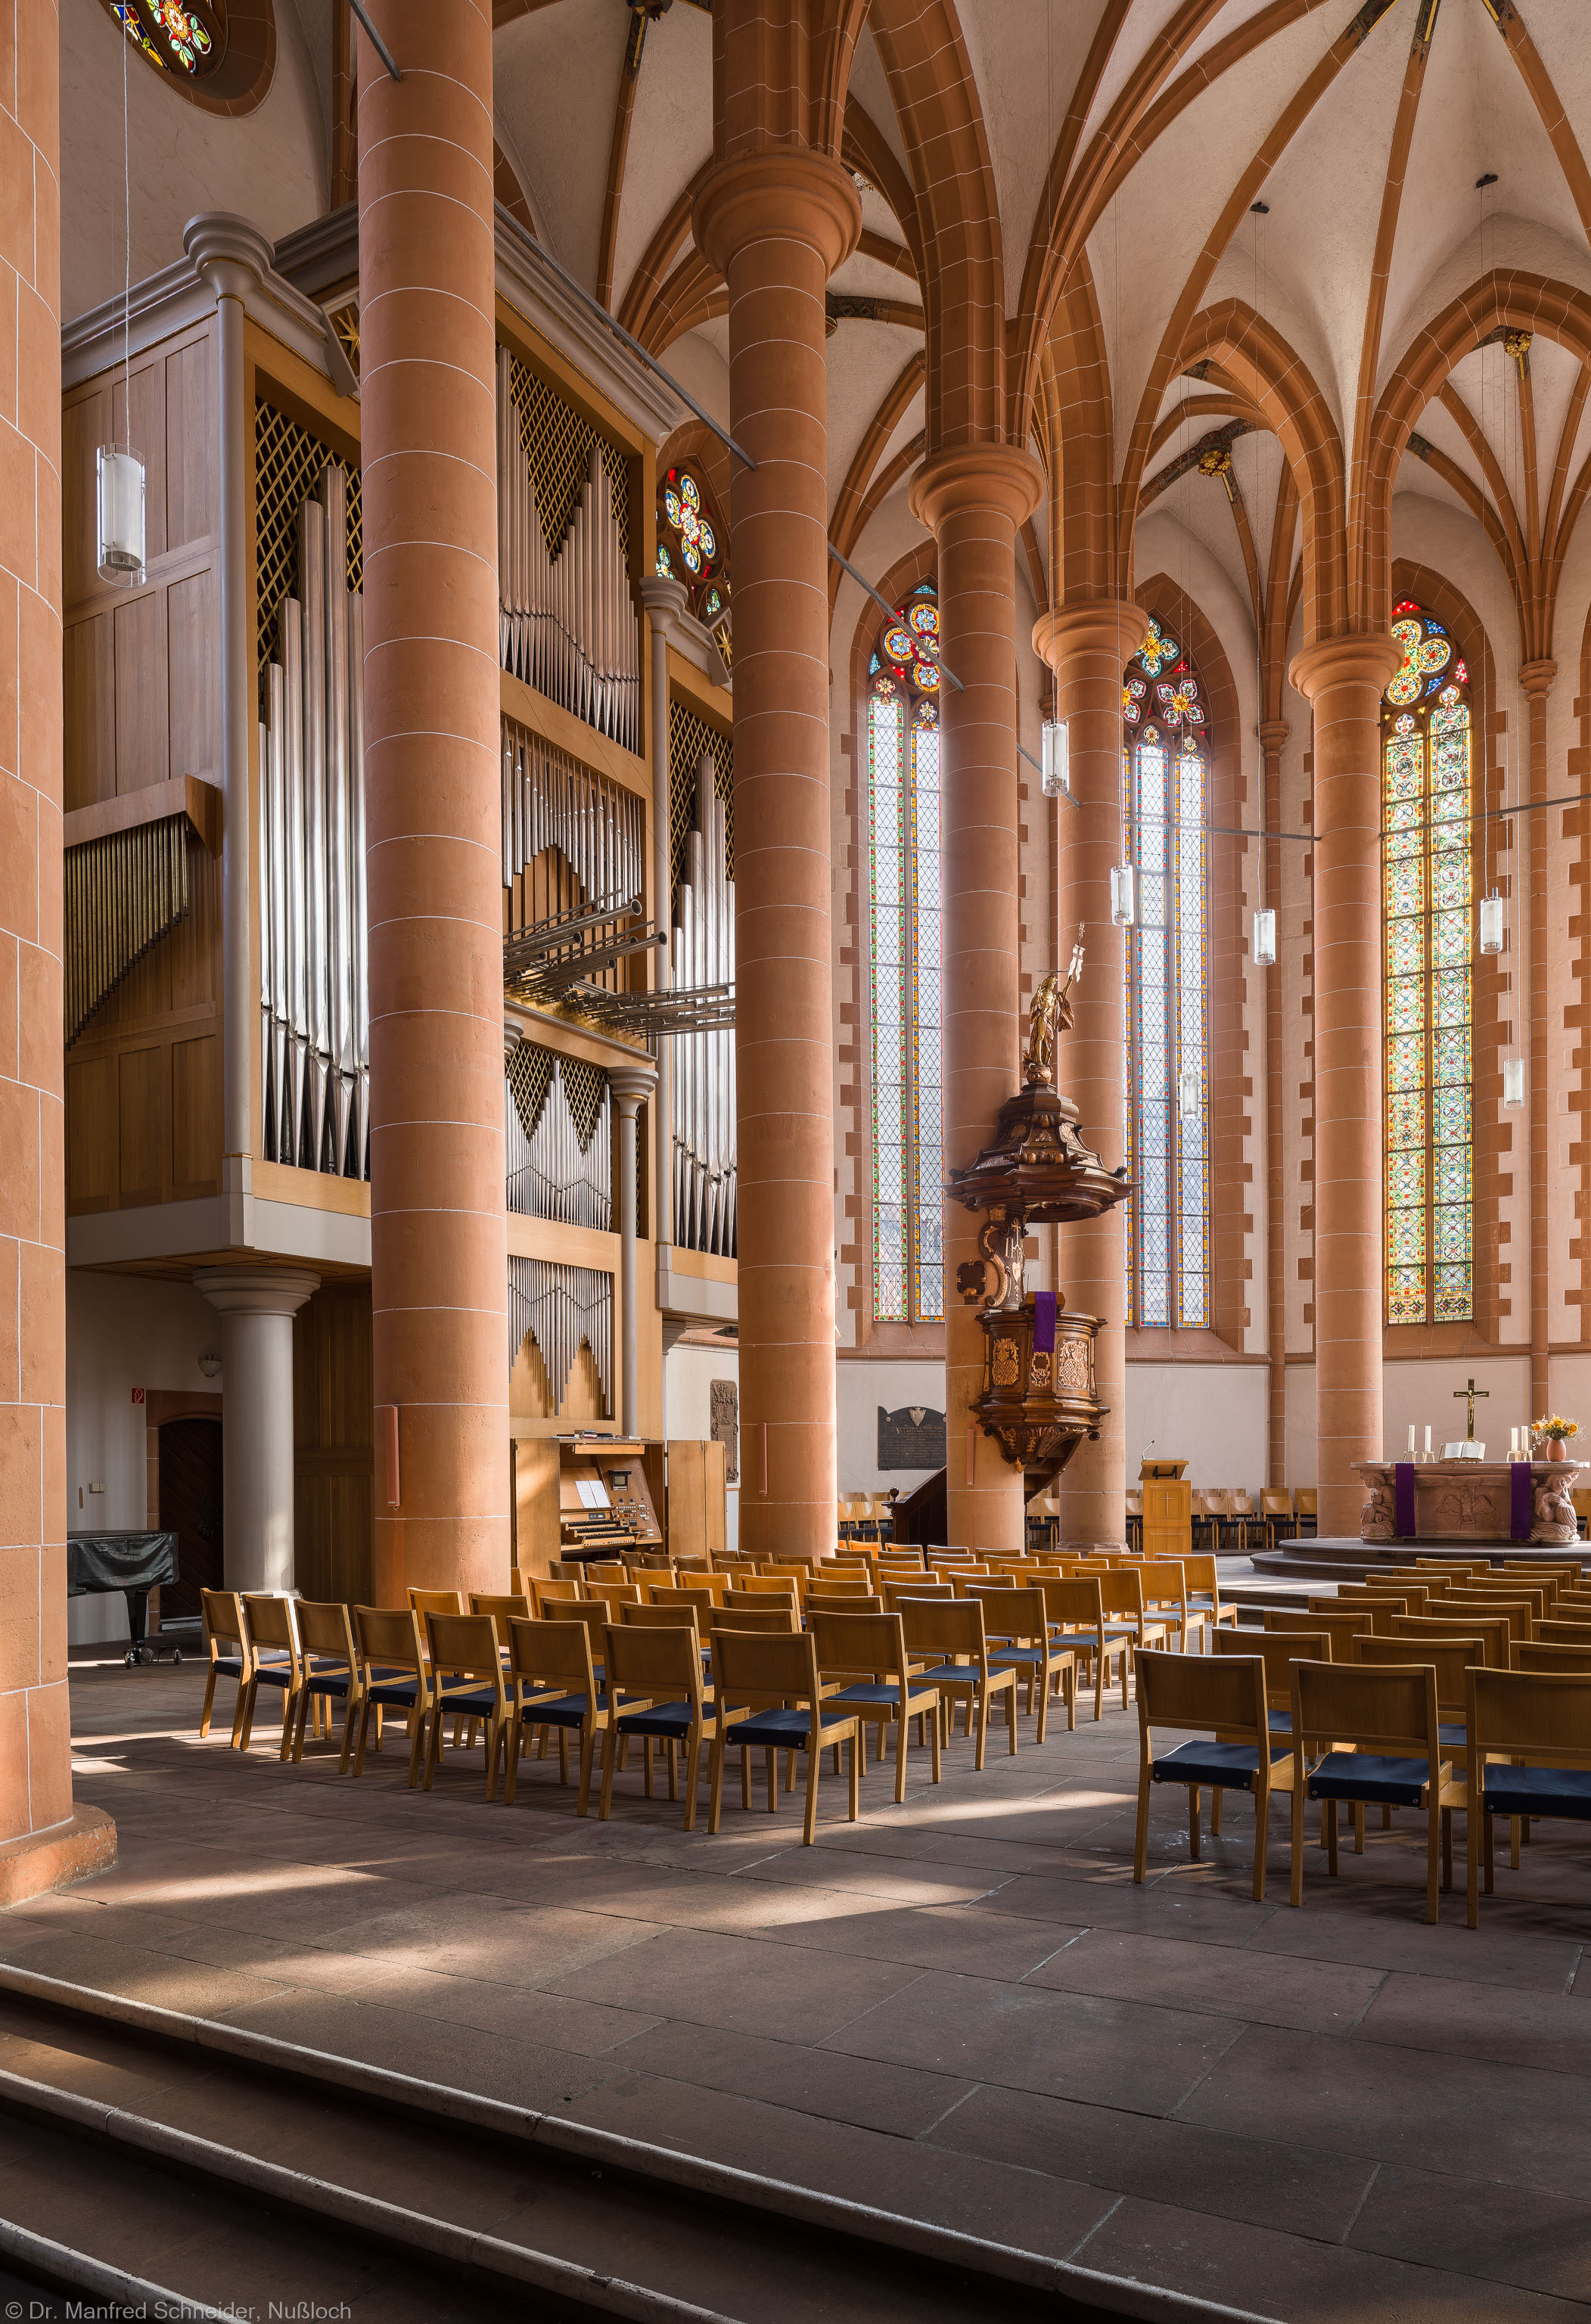 Heidelberg - Heiliggeistkirche - Chor - Blick in den Chor nach Nordosten mit Säulen, Orgel, Kanzel und Altar (aufgenommen im März 2013, am Vormittag)